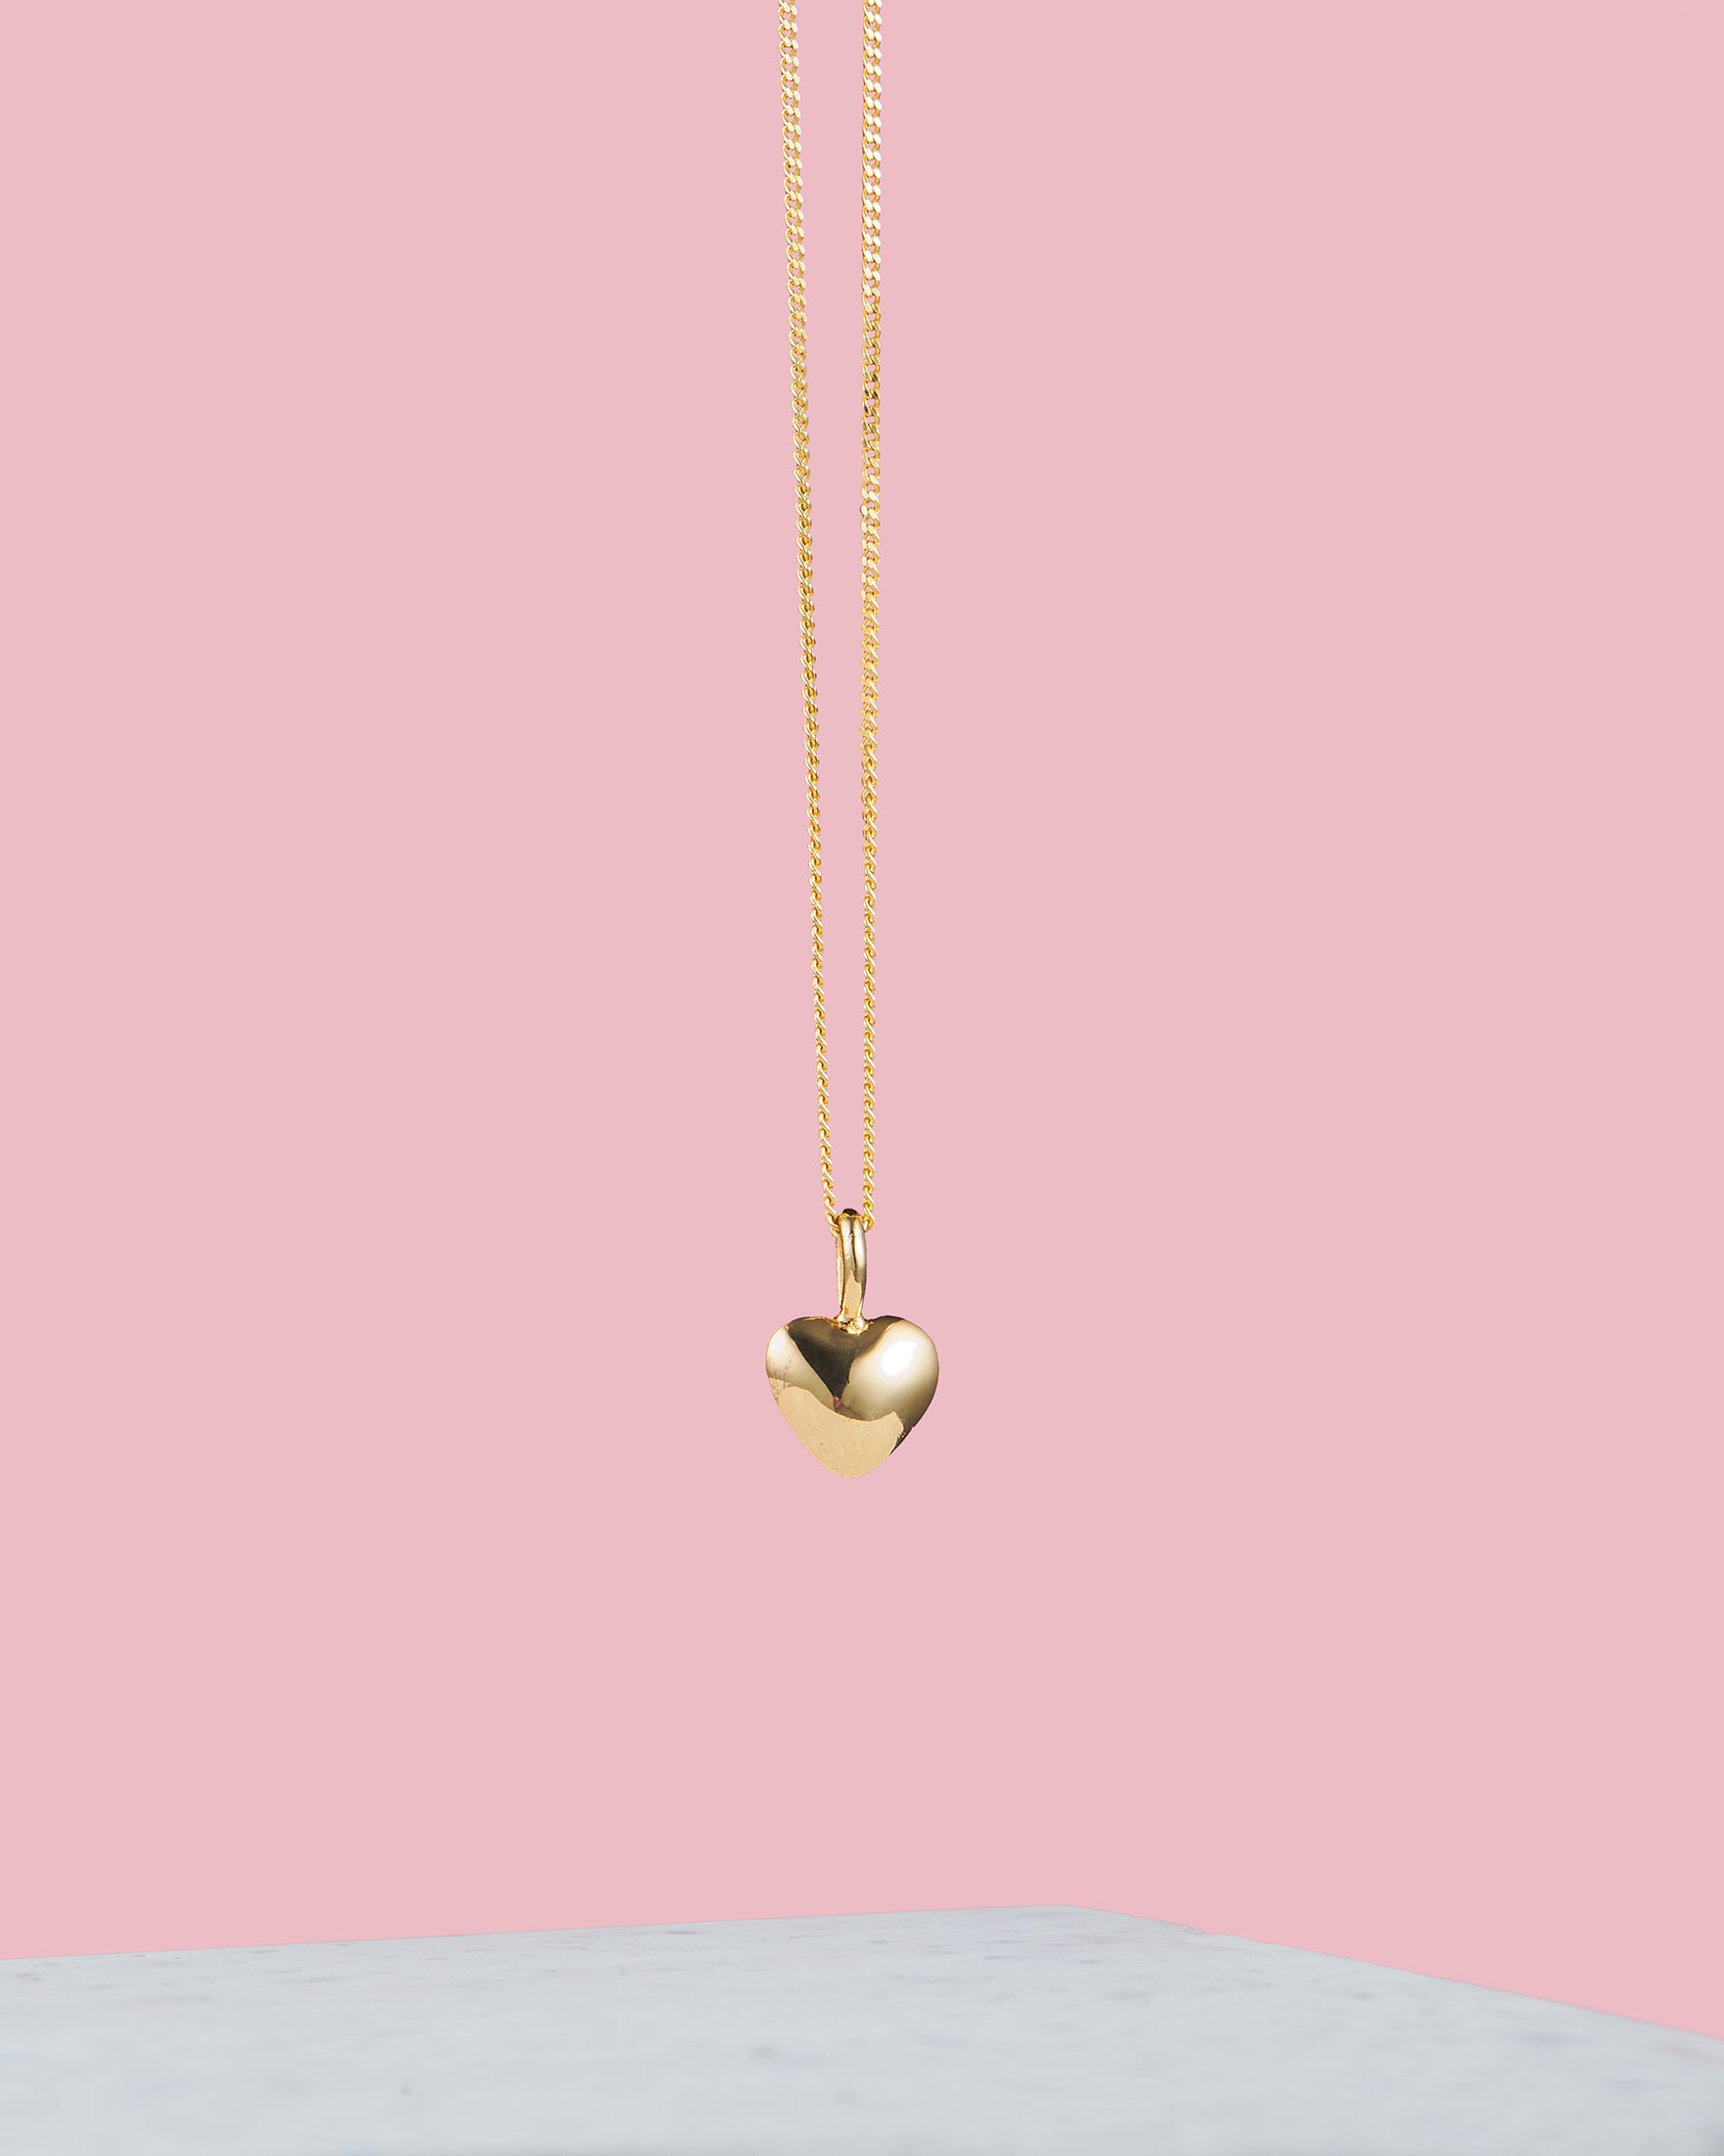 Kette mit Herzchen Anhänger | Herz Kette in gold | VERLAN Jewellery | Handgemachter Schmuck